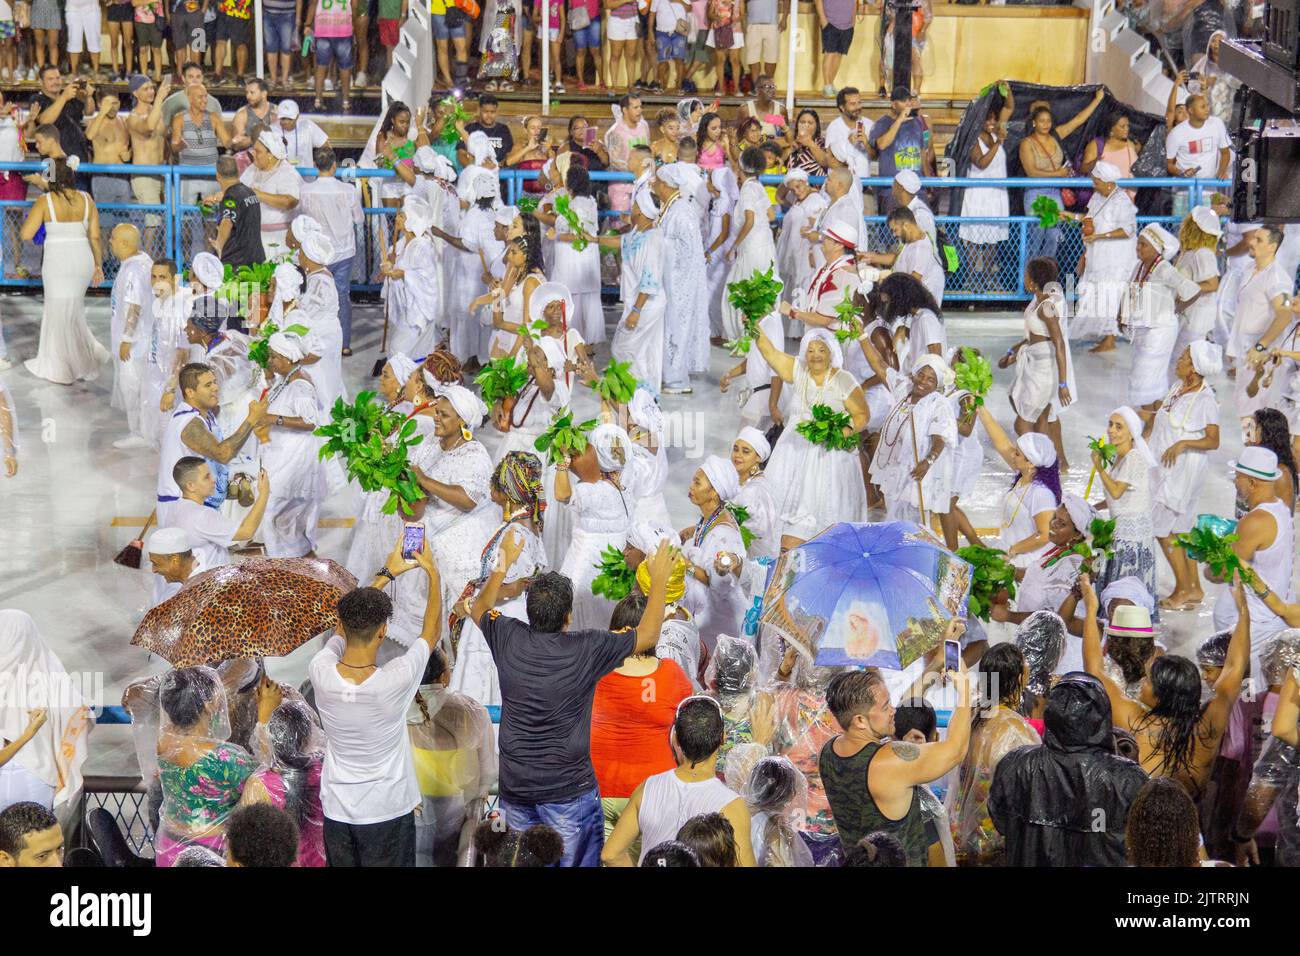 Lavaggio del sapucai a Rio de Janeiro, Brasile - 16 febbraio 2020: Tradizionale evento del carnevale di rio de janeiro, chiusura delle prove in t Foto Stock